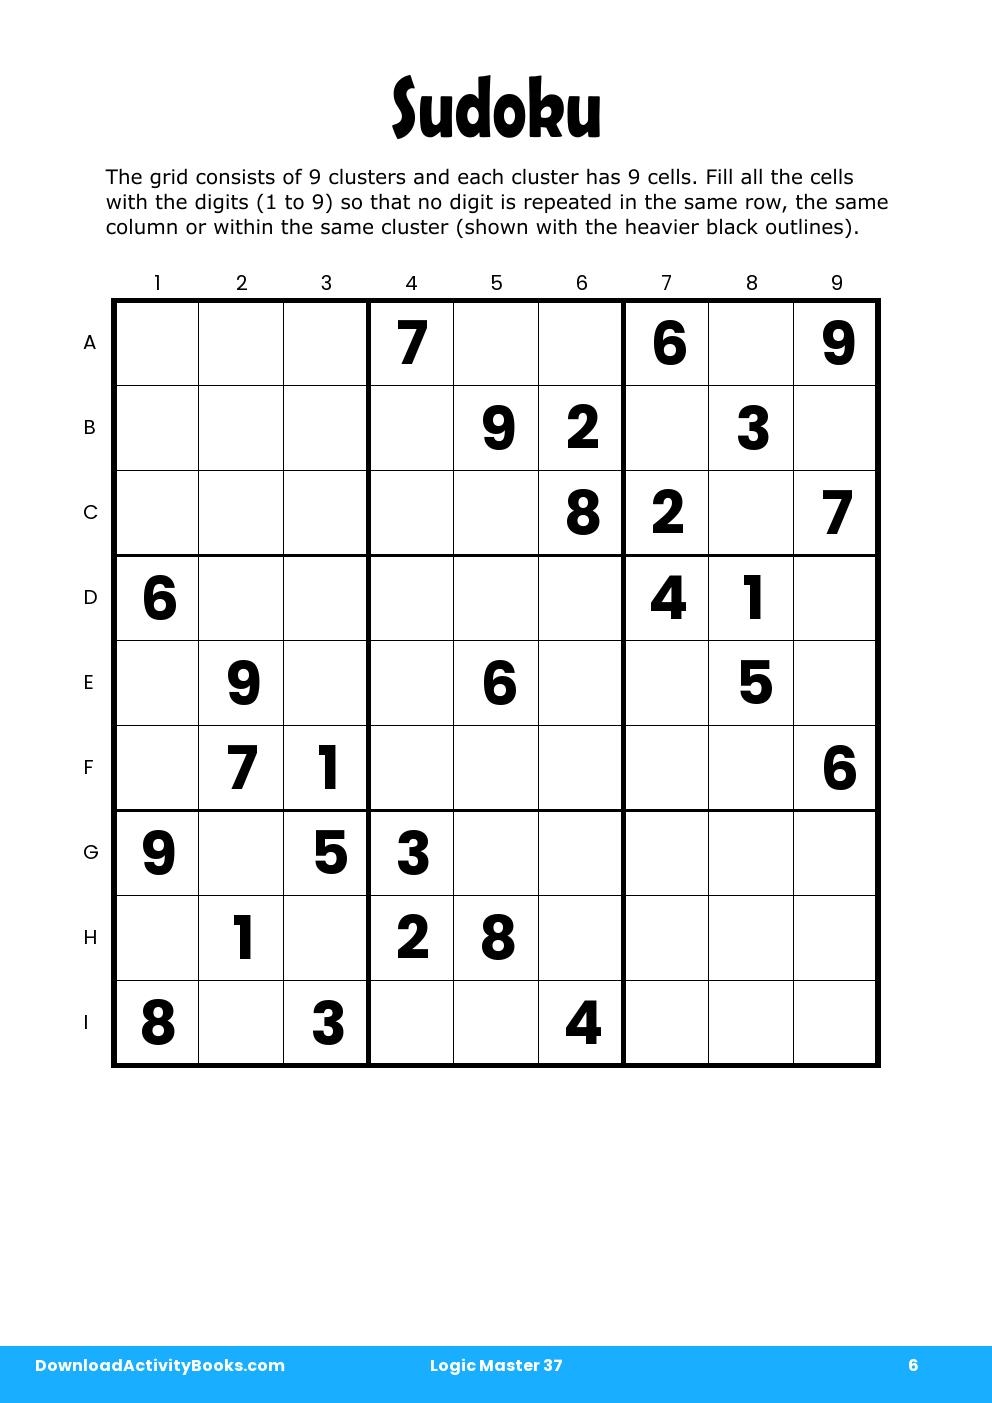 Sudoku in Logic Master 37